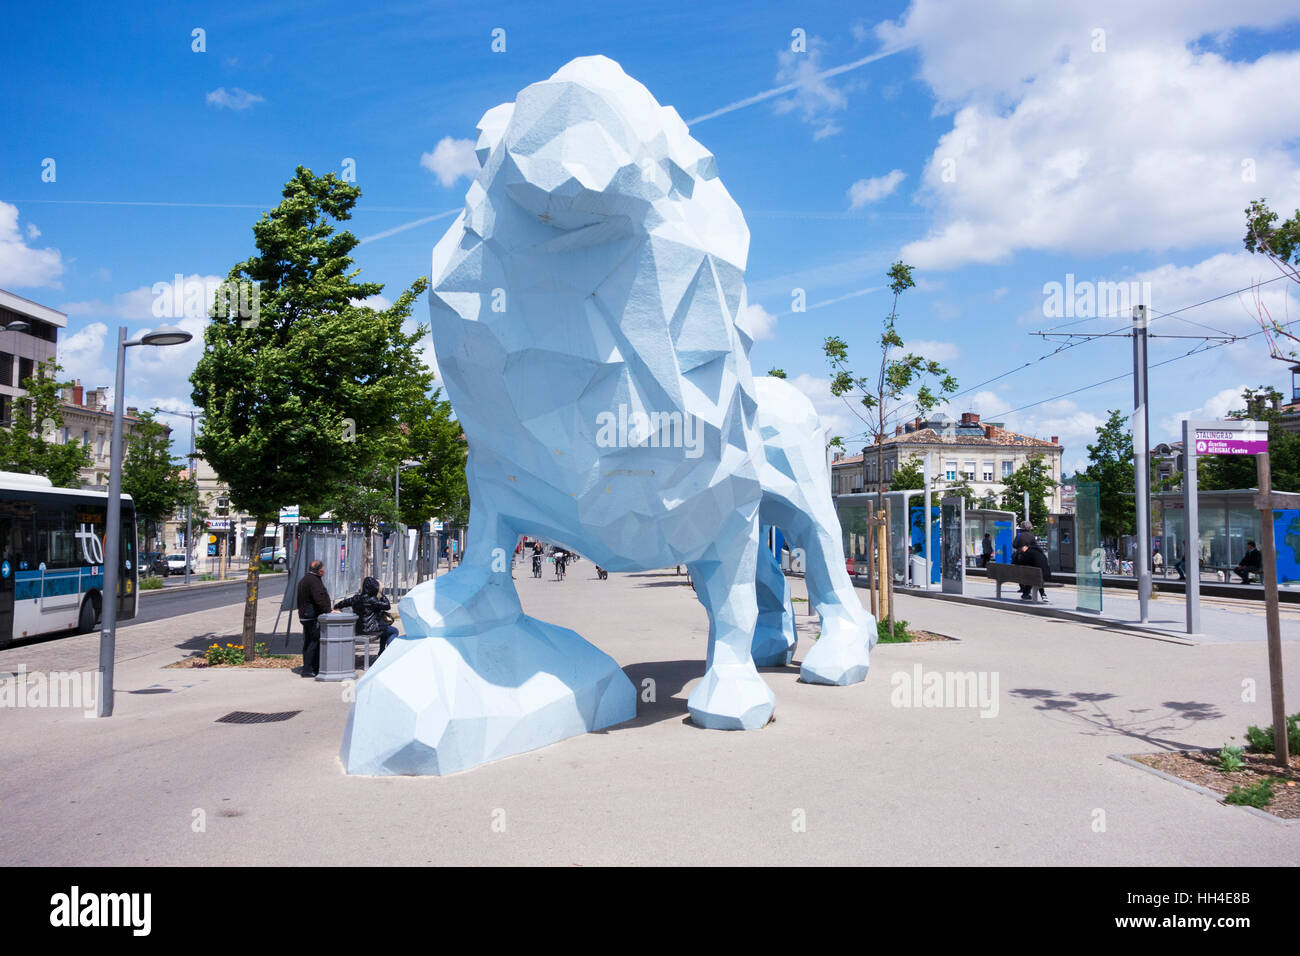 Le blue lion sculpture par Xavier Veilhan, Place Stalingrad, Bordeaux, Gironde, Aquitaine, France Banque D'Images